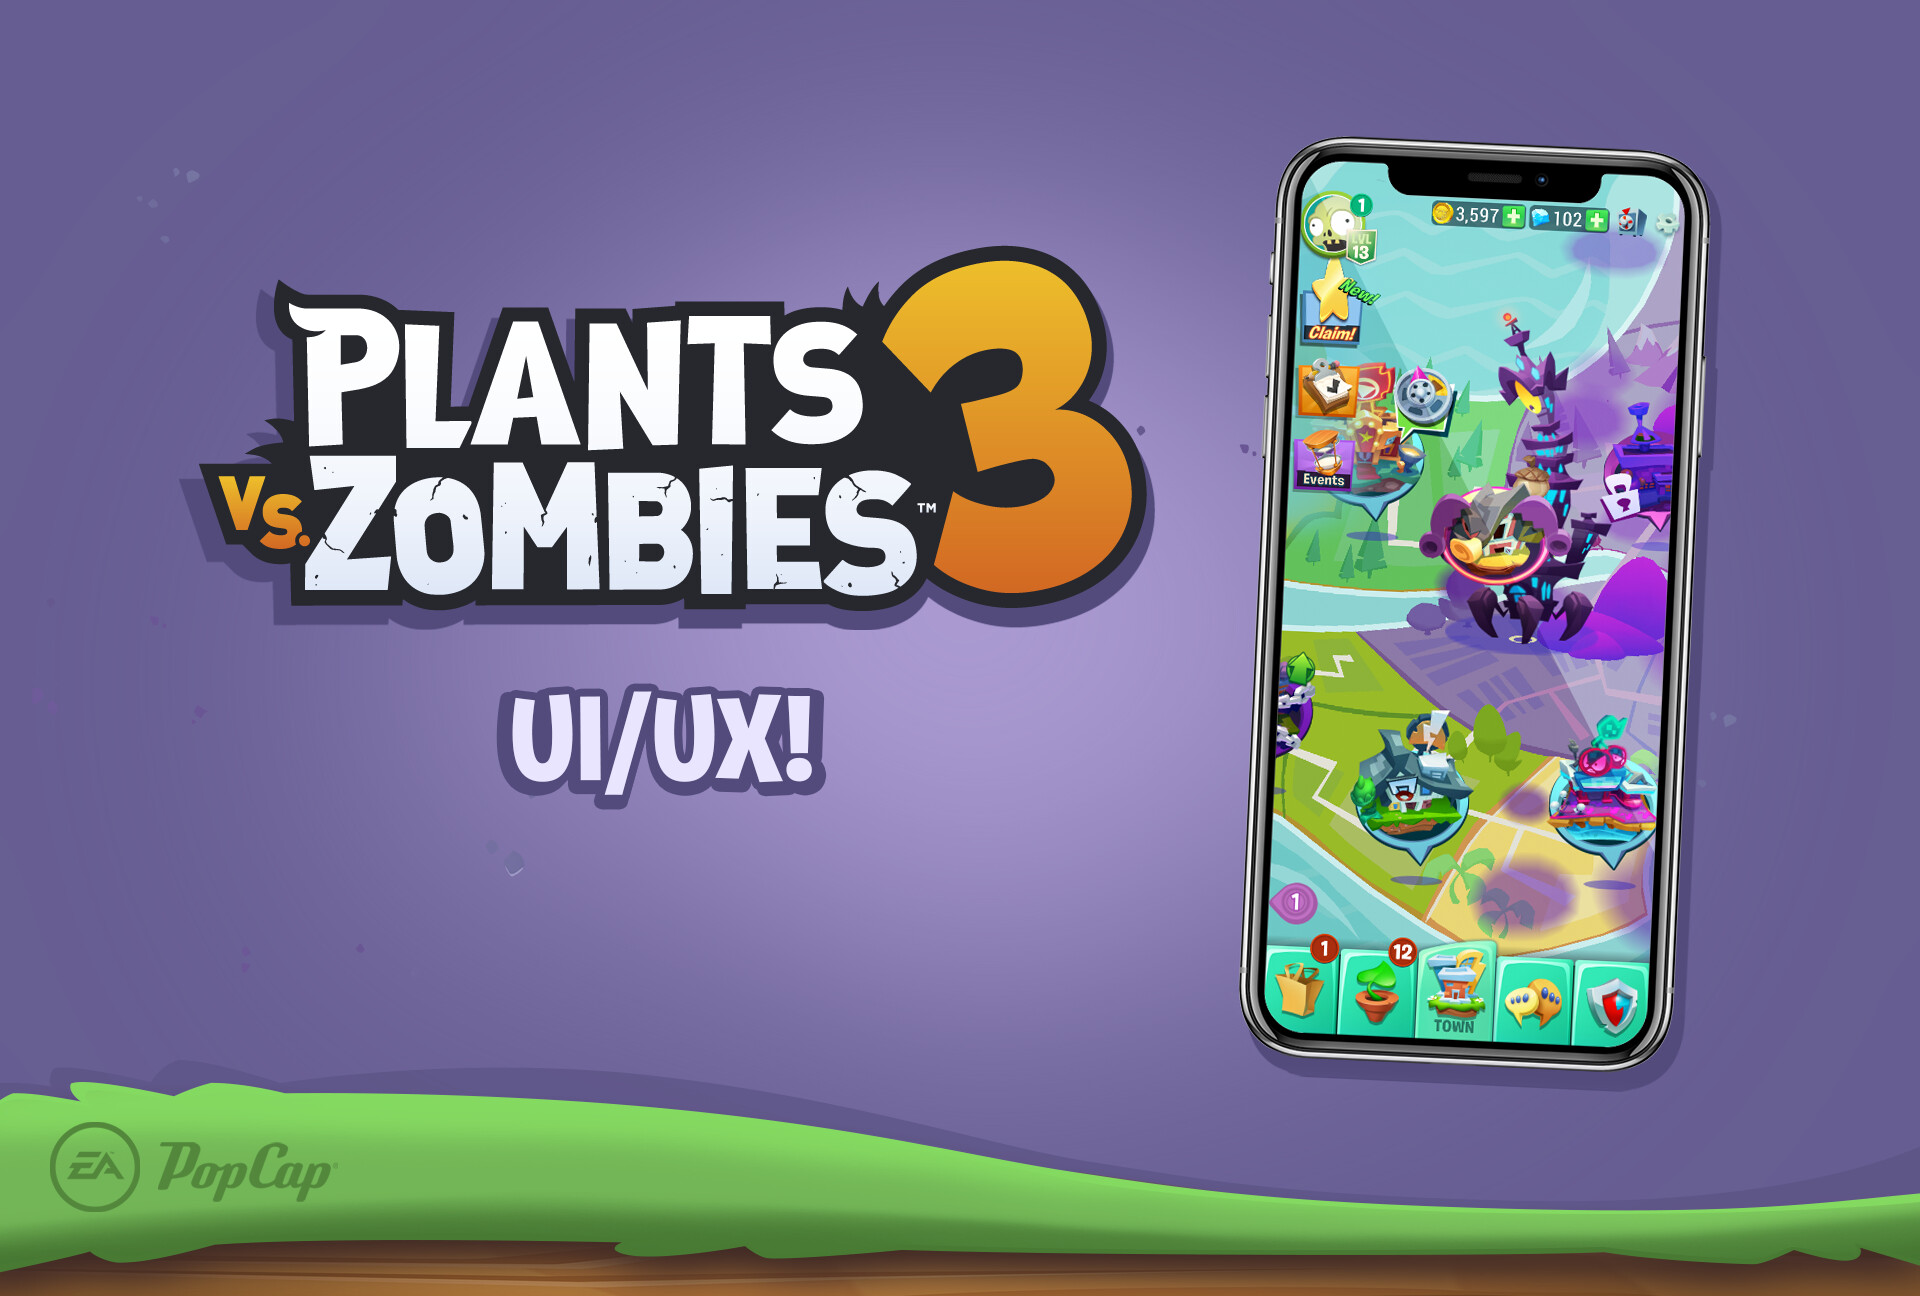 Plants vs Zombies 3 UI